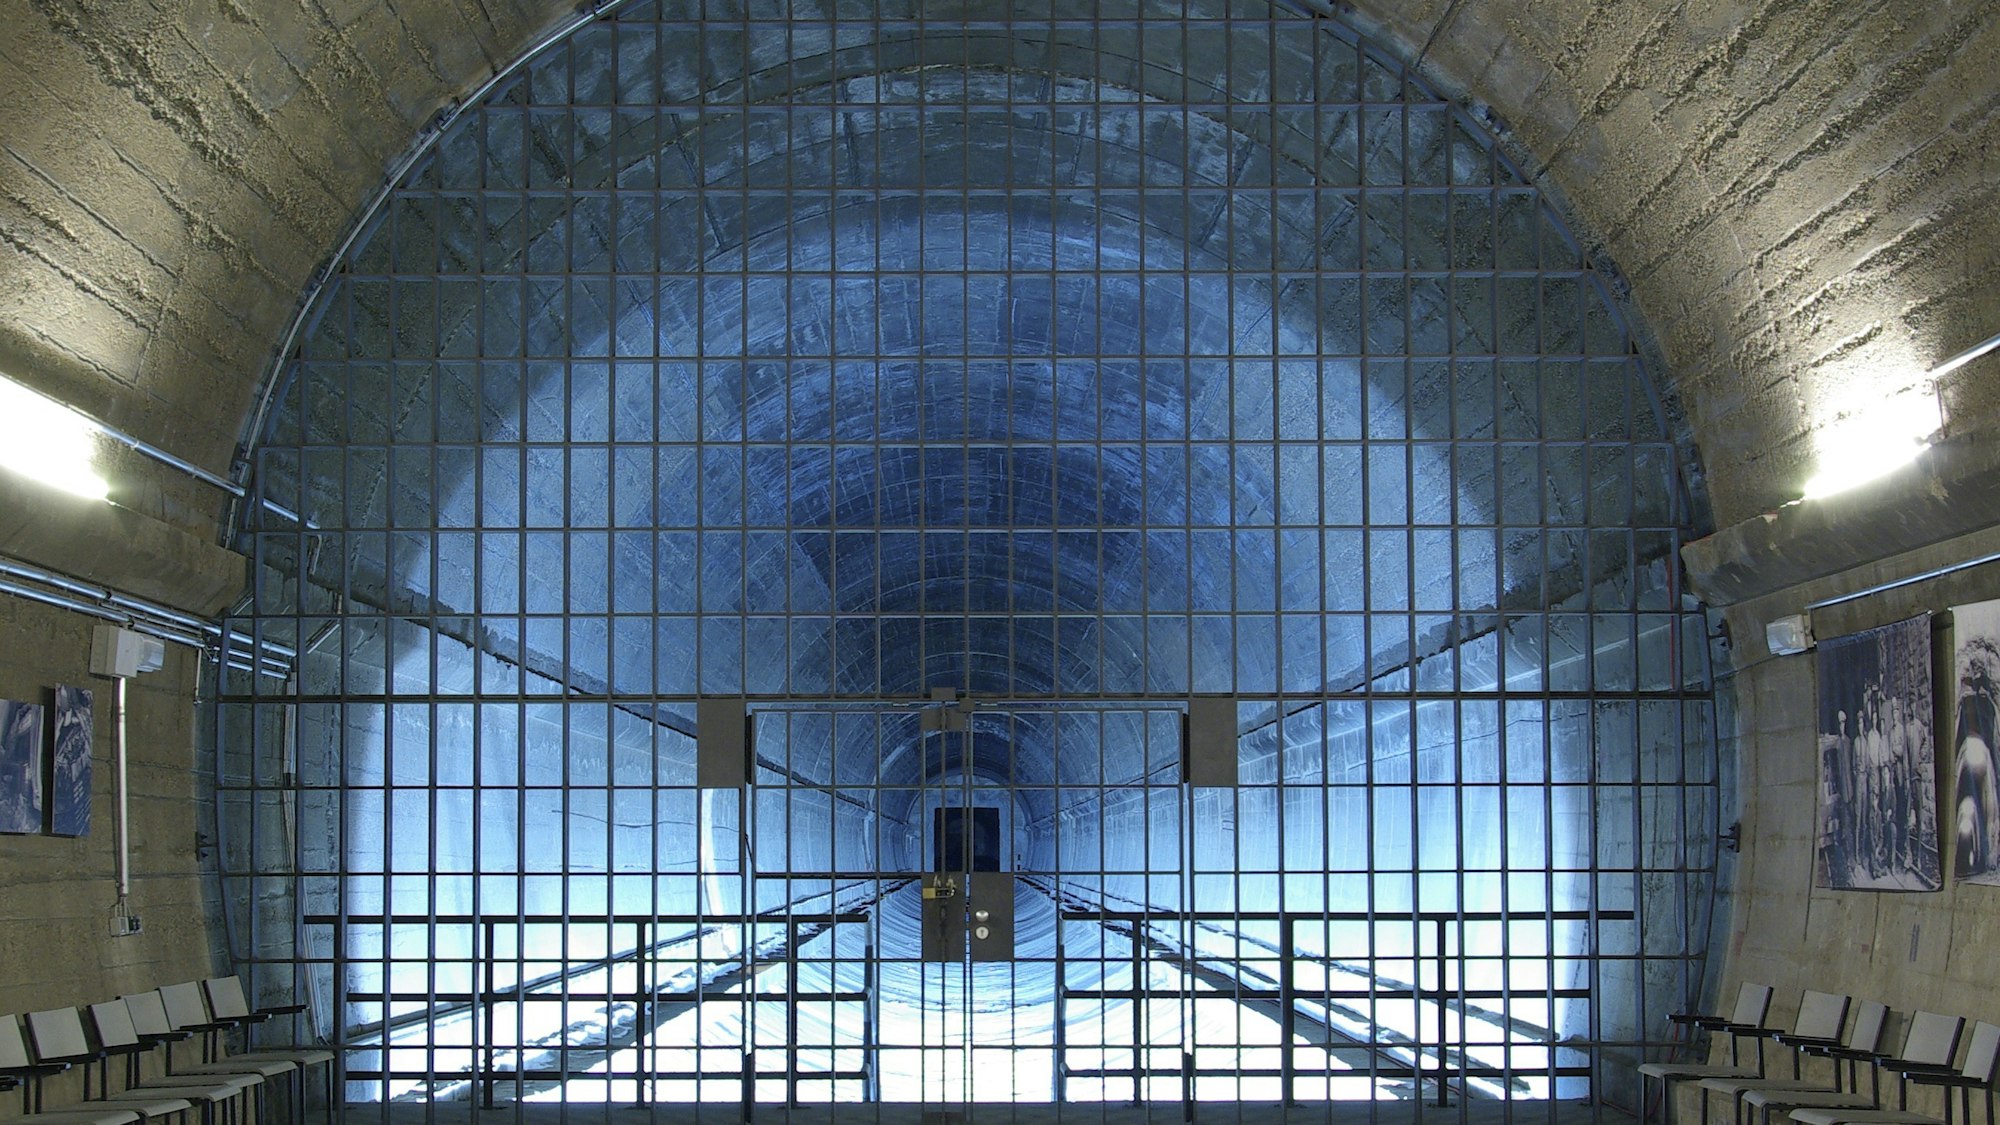 Gitter vor einem blau beleuchteten Tunnel